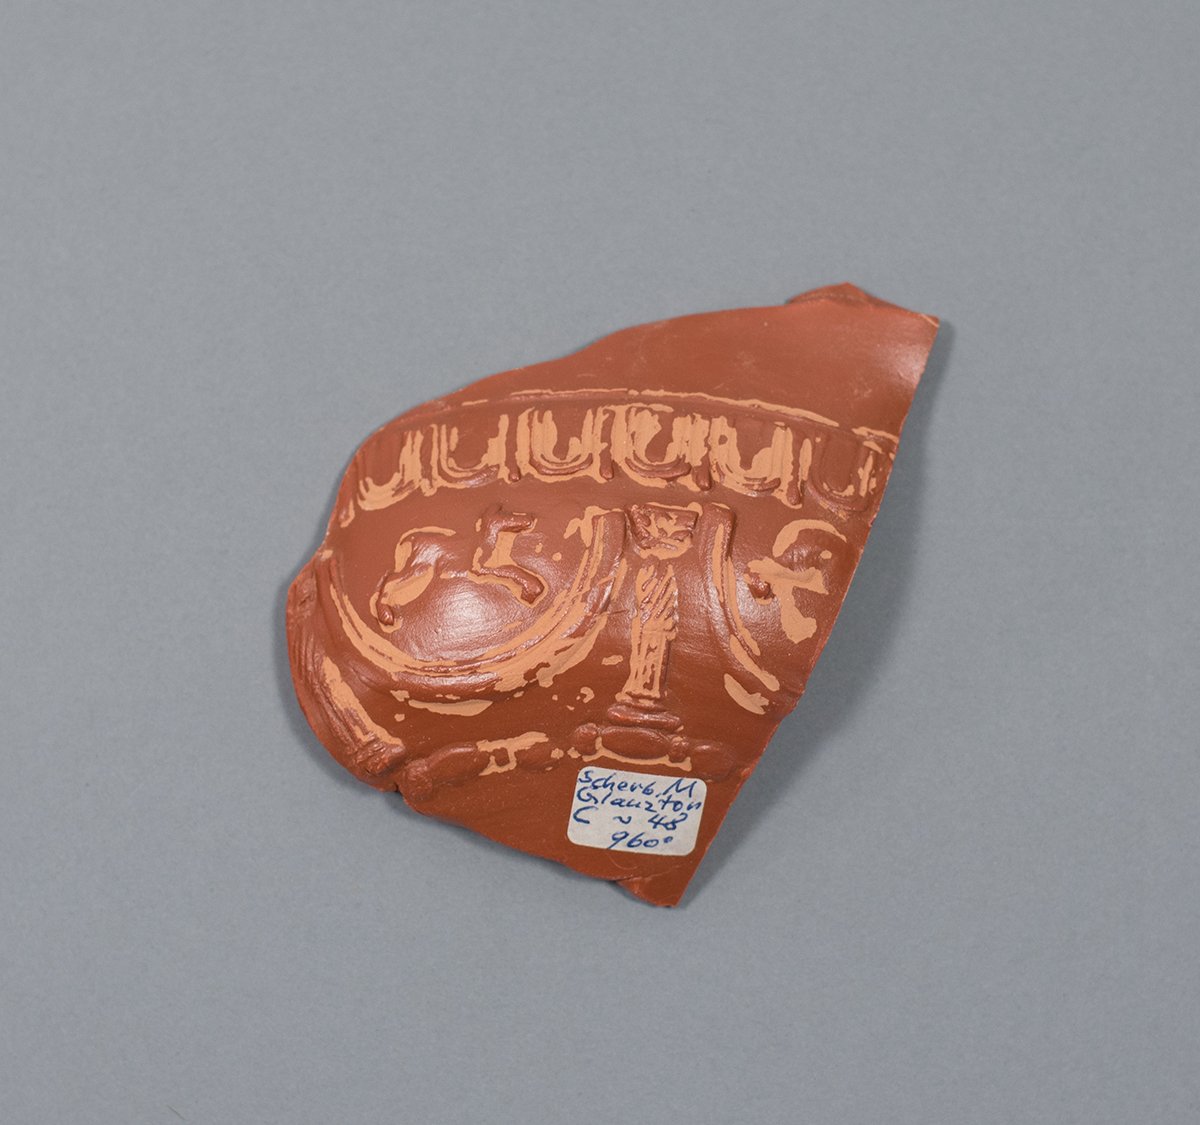 Teilstück einer Reliefschüssel als Brennprobe (Terra Sigillata Museum CC BY-NC-ND)